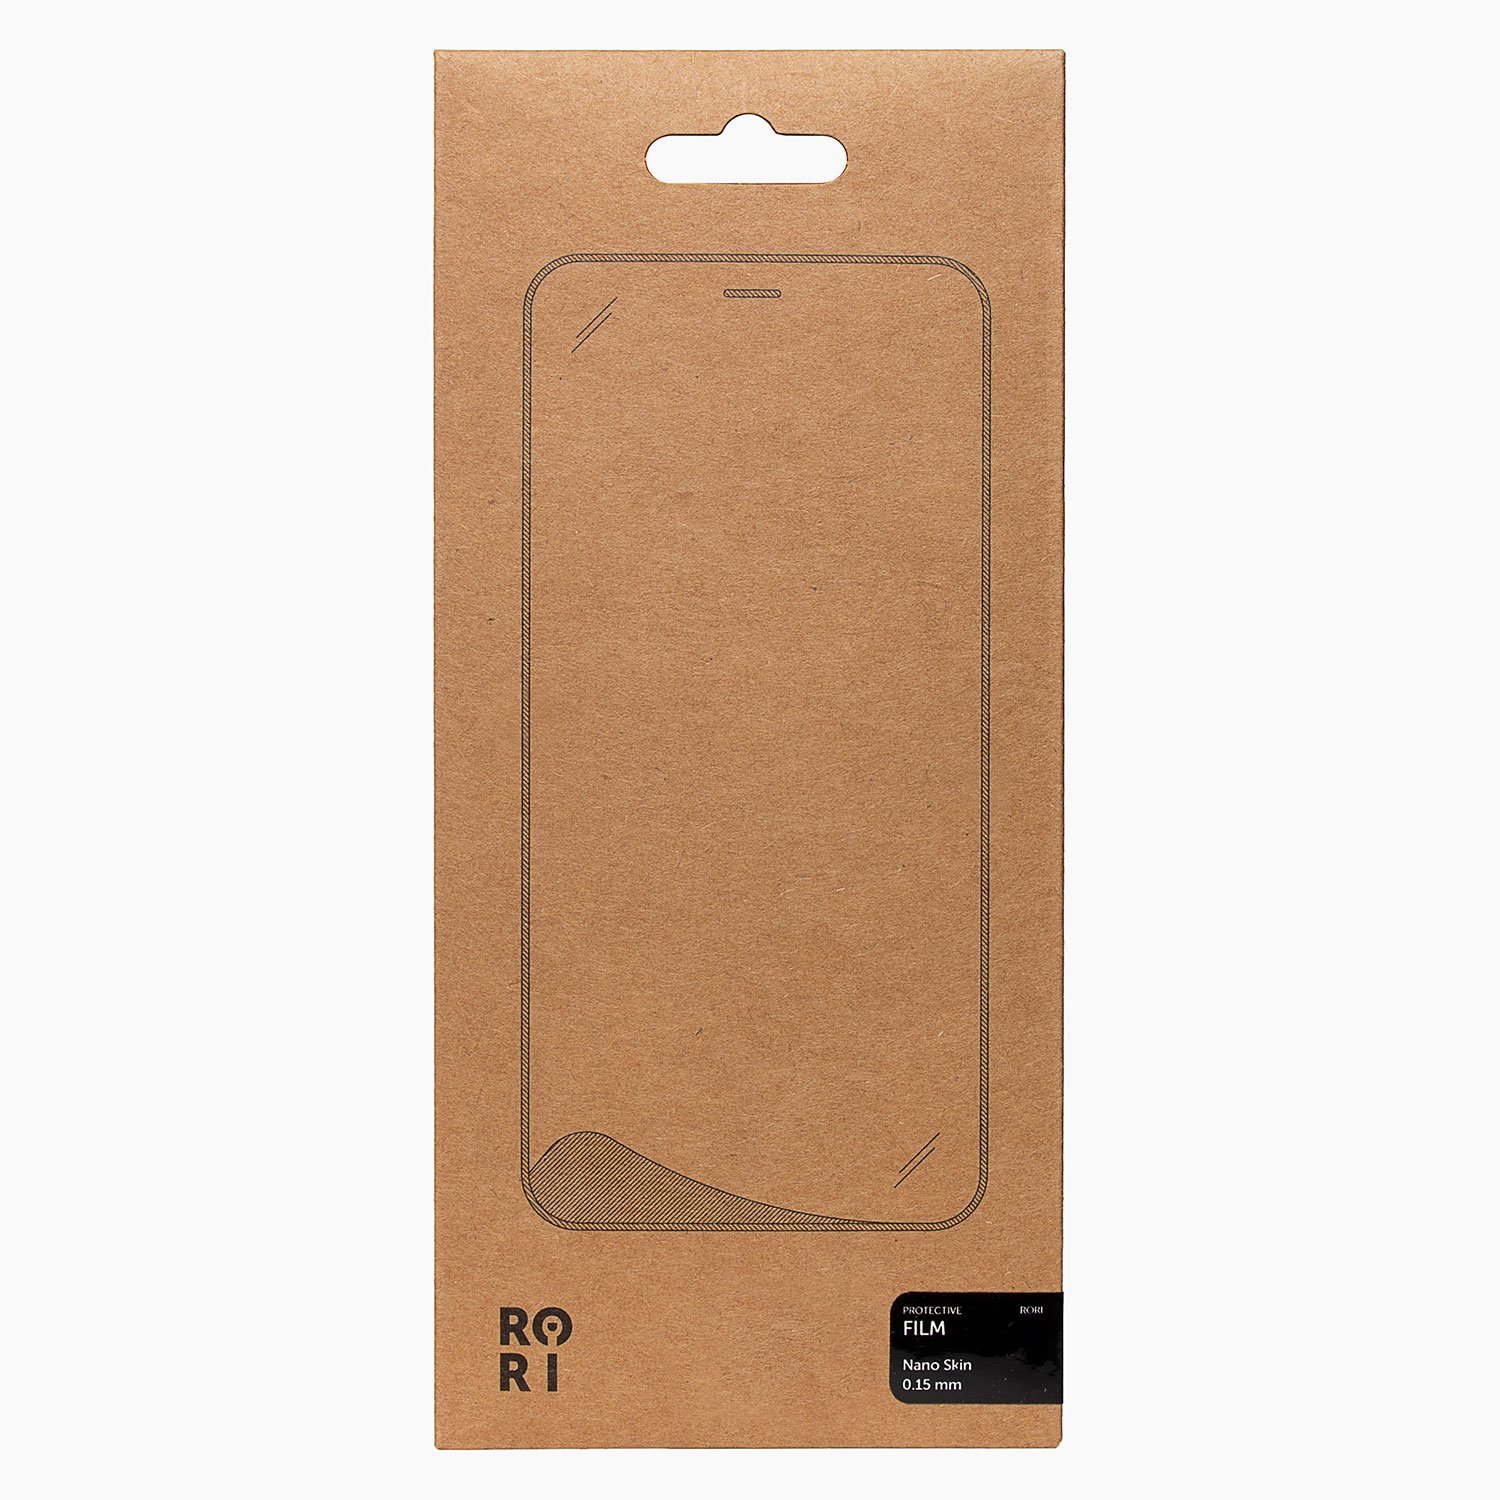 Защитная пленка Rori Polymer для экрана смартфона Huawei P40 Lite E, FullScreen, черная рамка (119518)